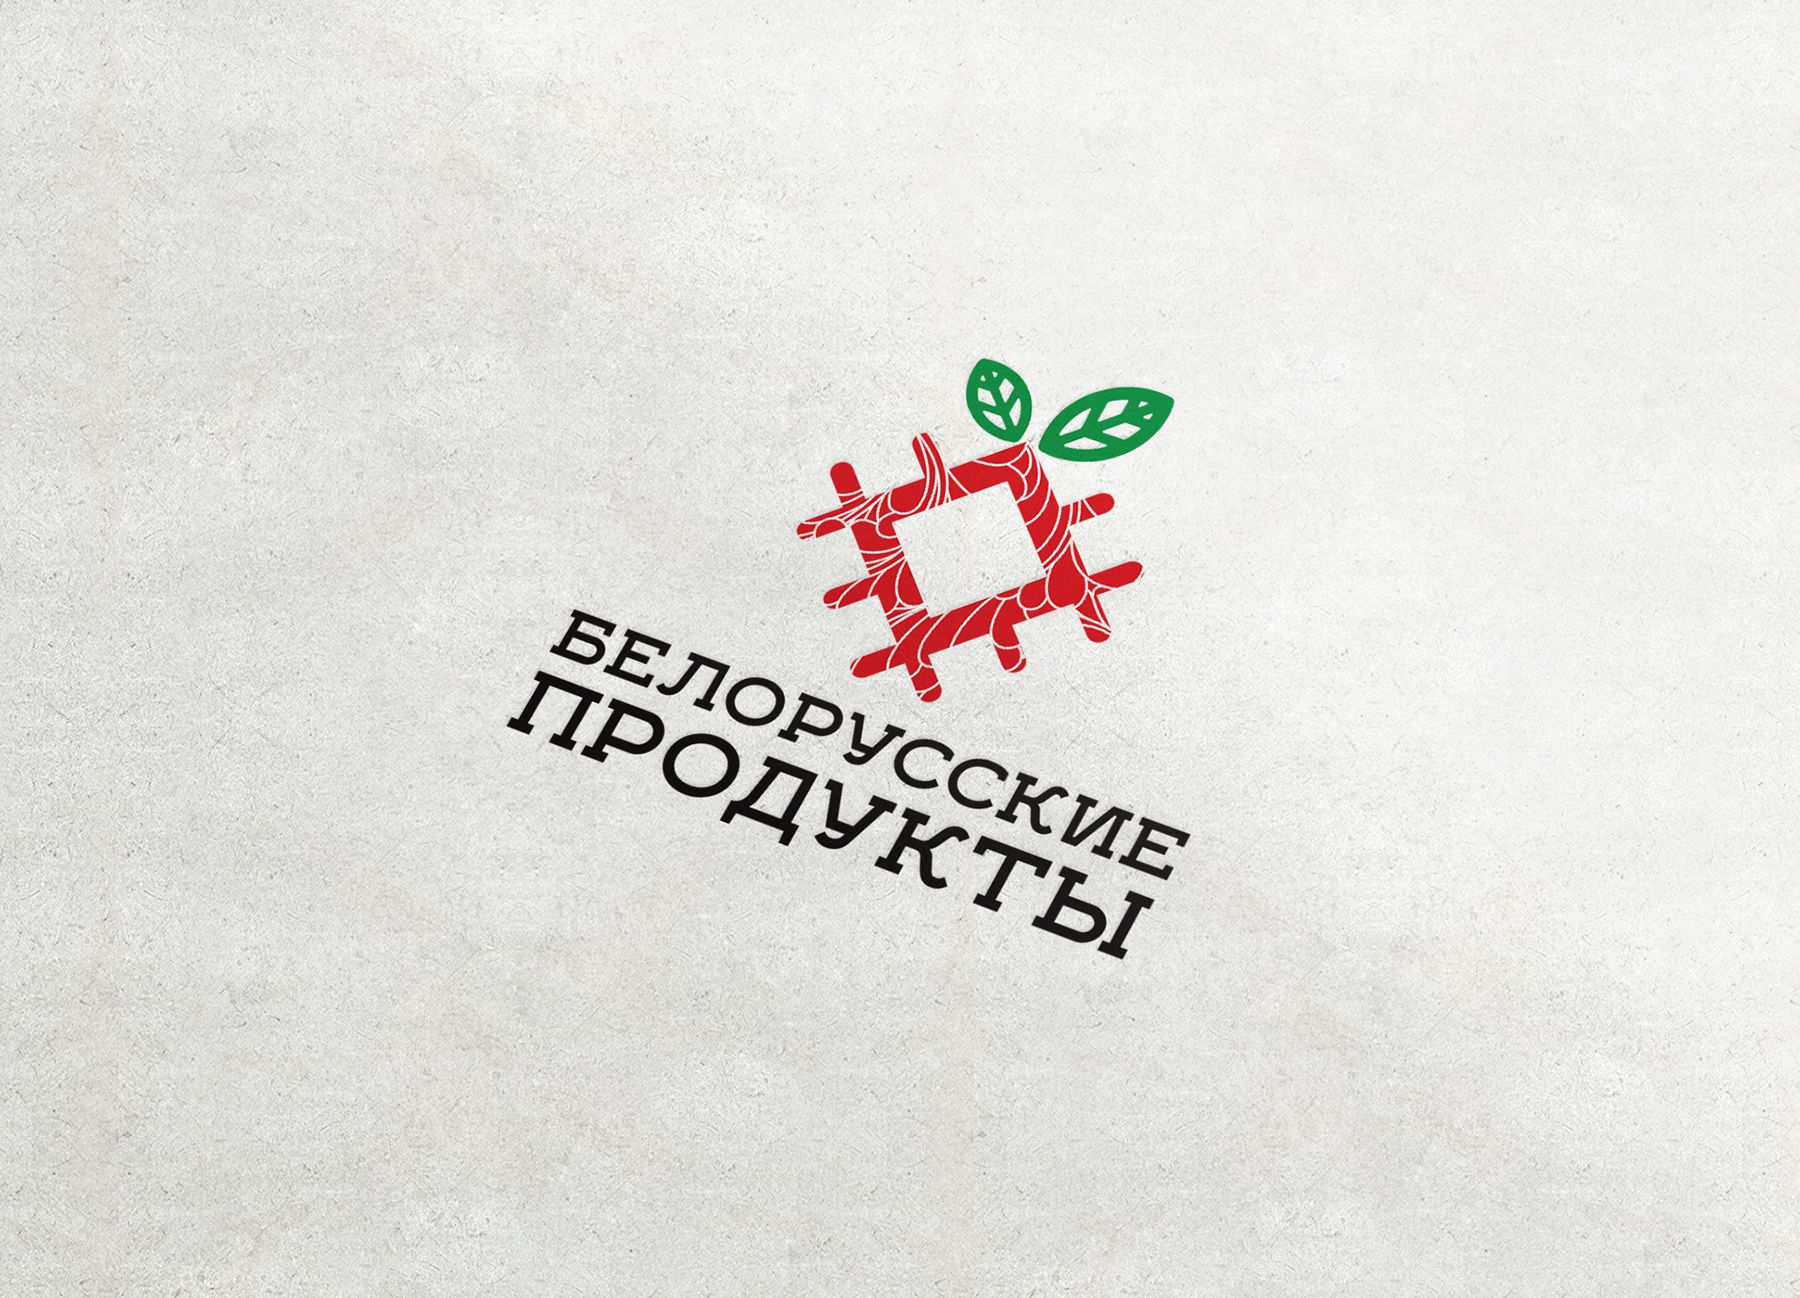 Логотип для Продукты из белоруссии, белорусские продукты - дизайнер funkielevis